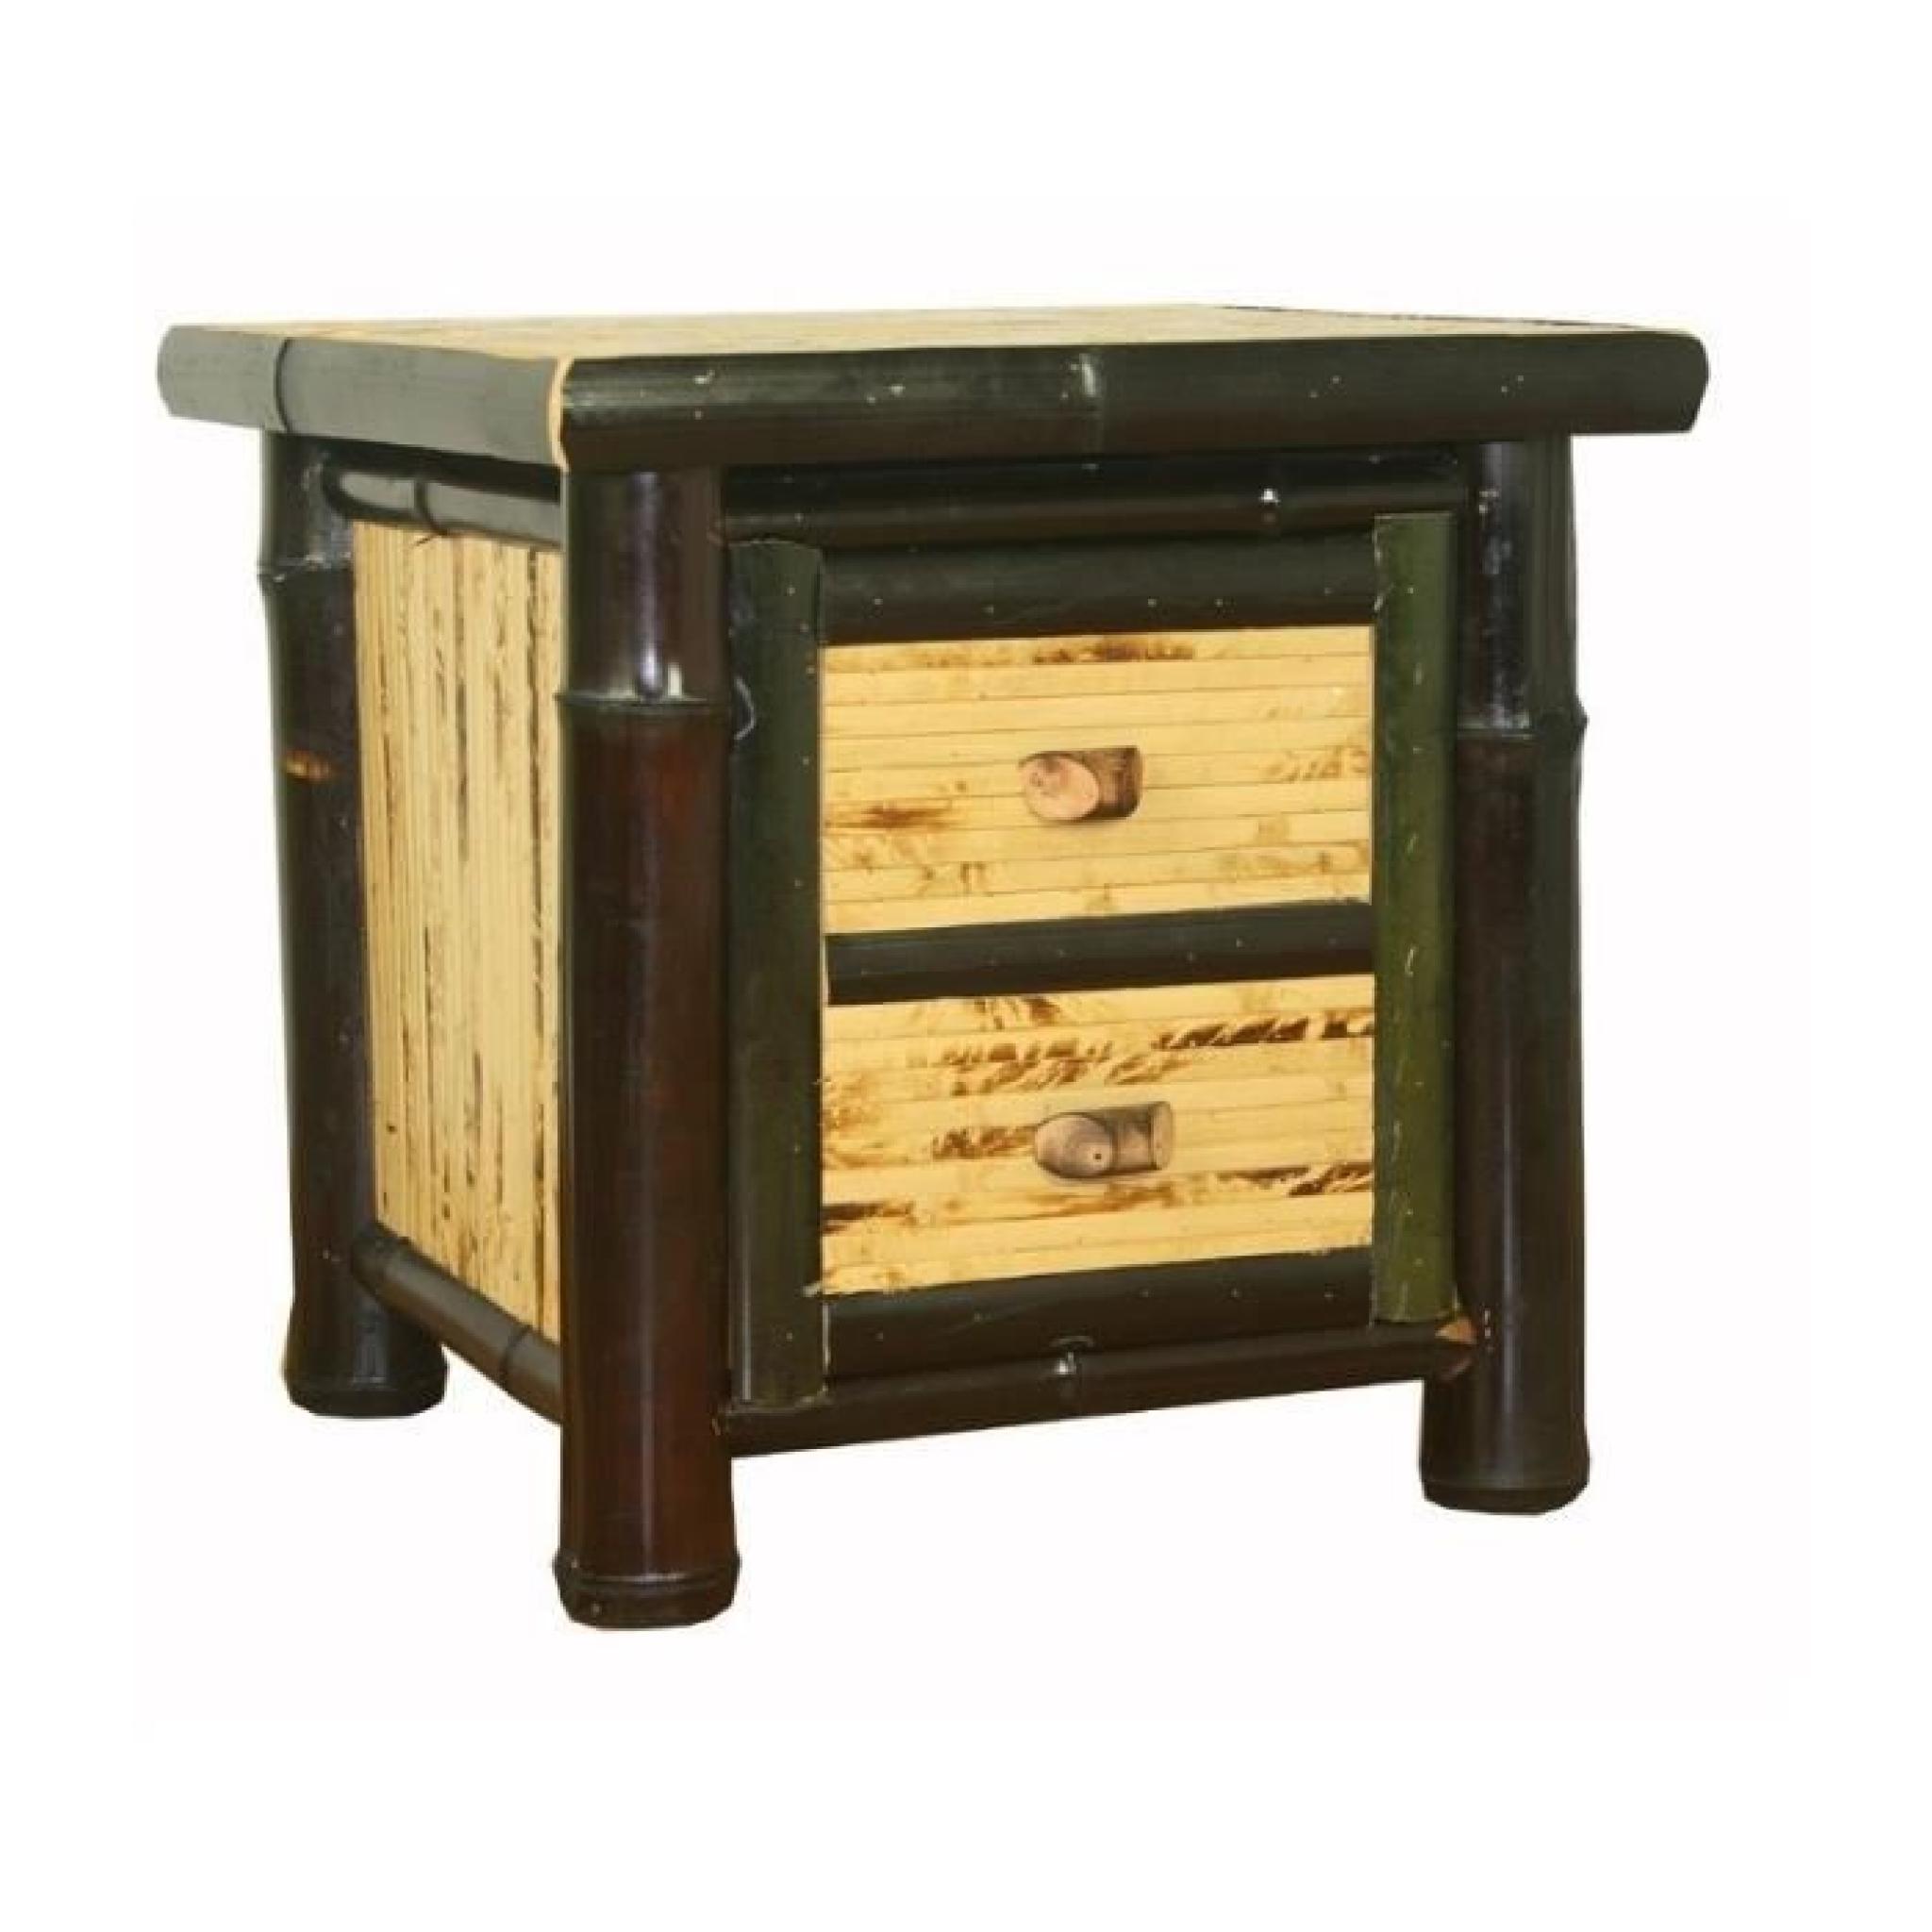 Table de chevet / nuit en bambou couleur brun foncé verni 40x45x40 cm MOC06003